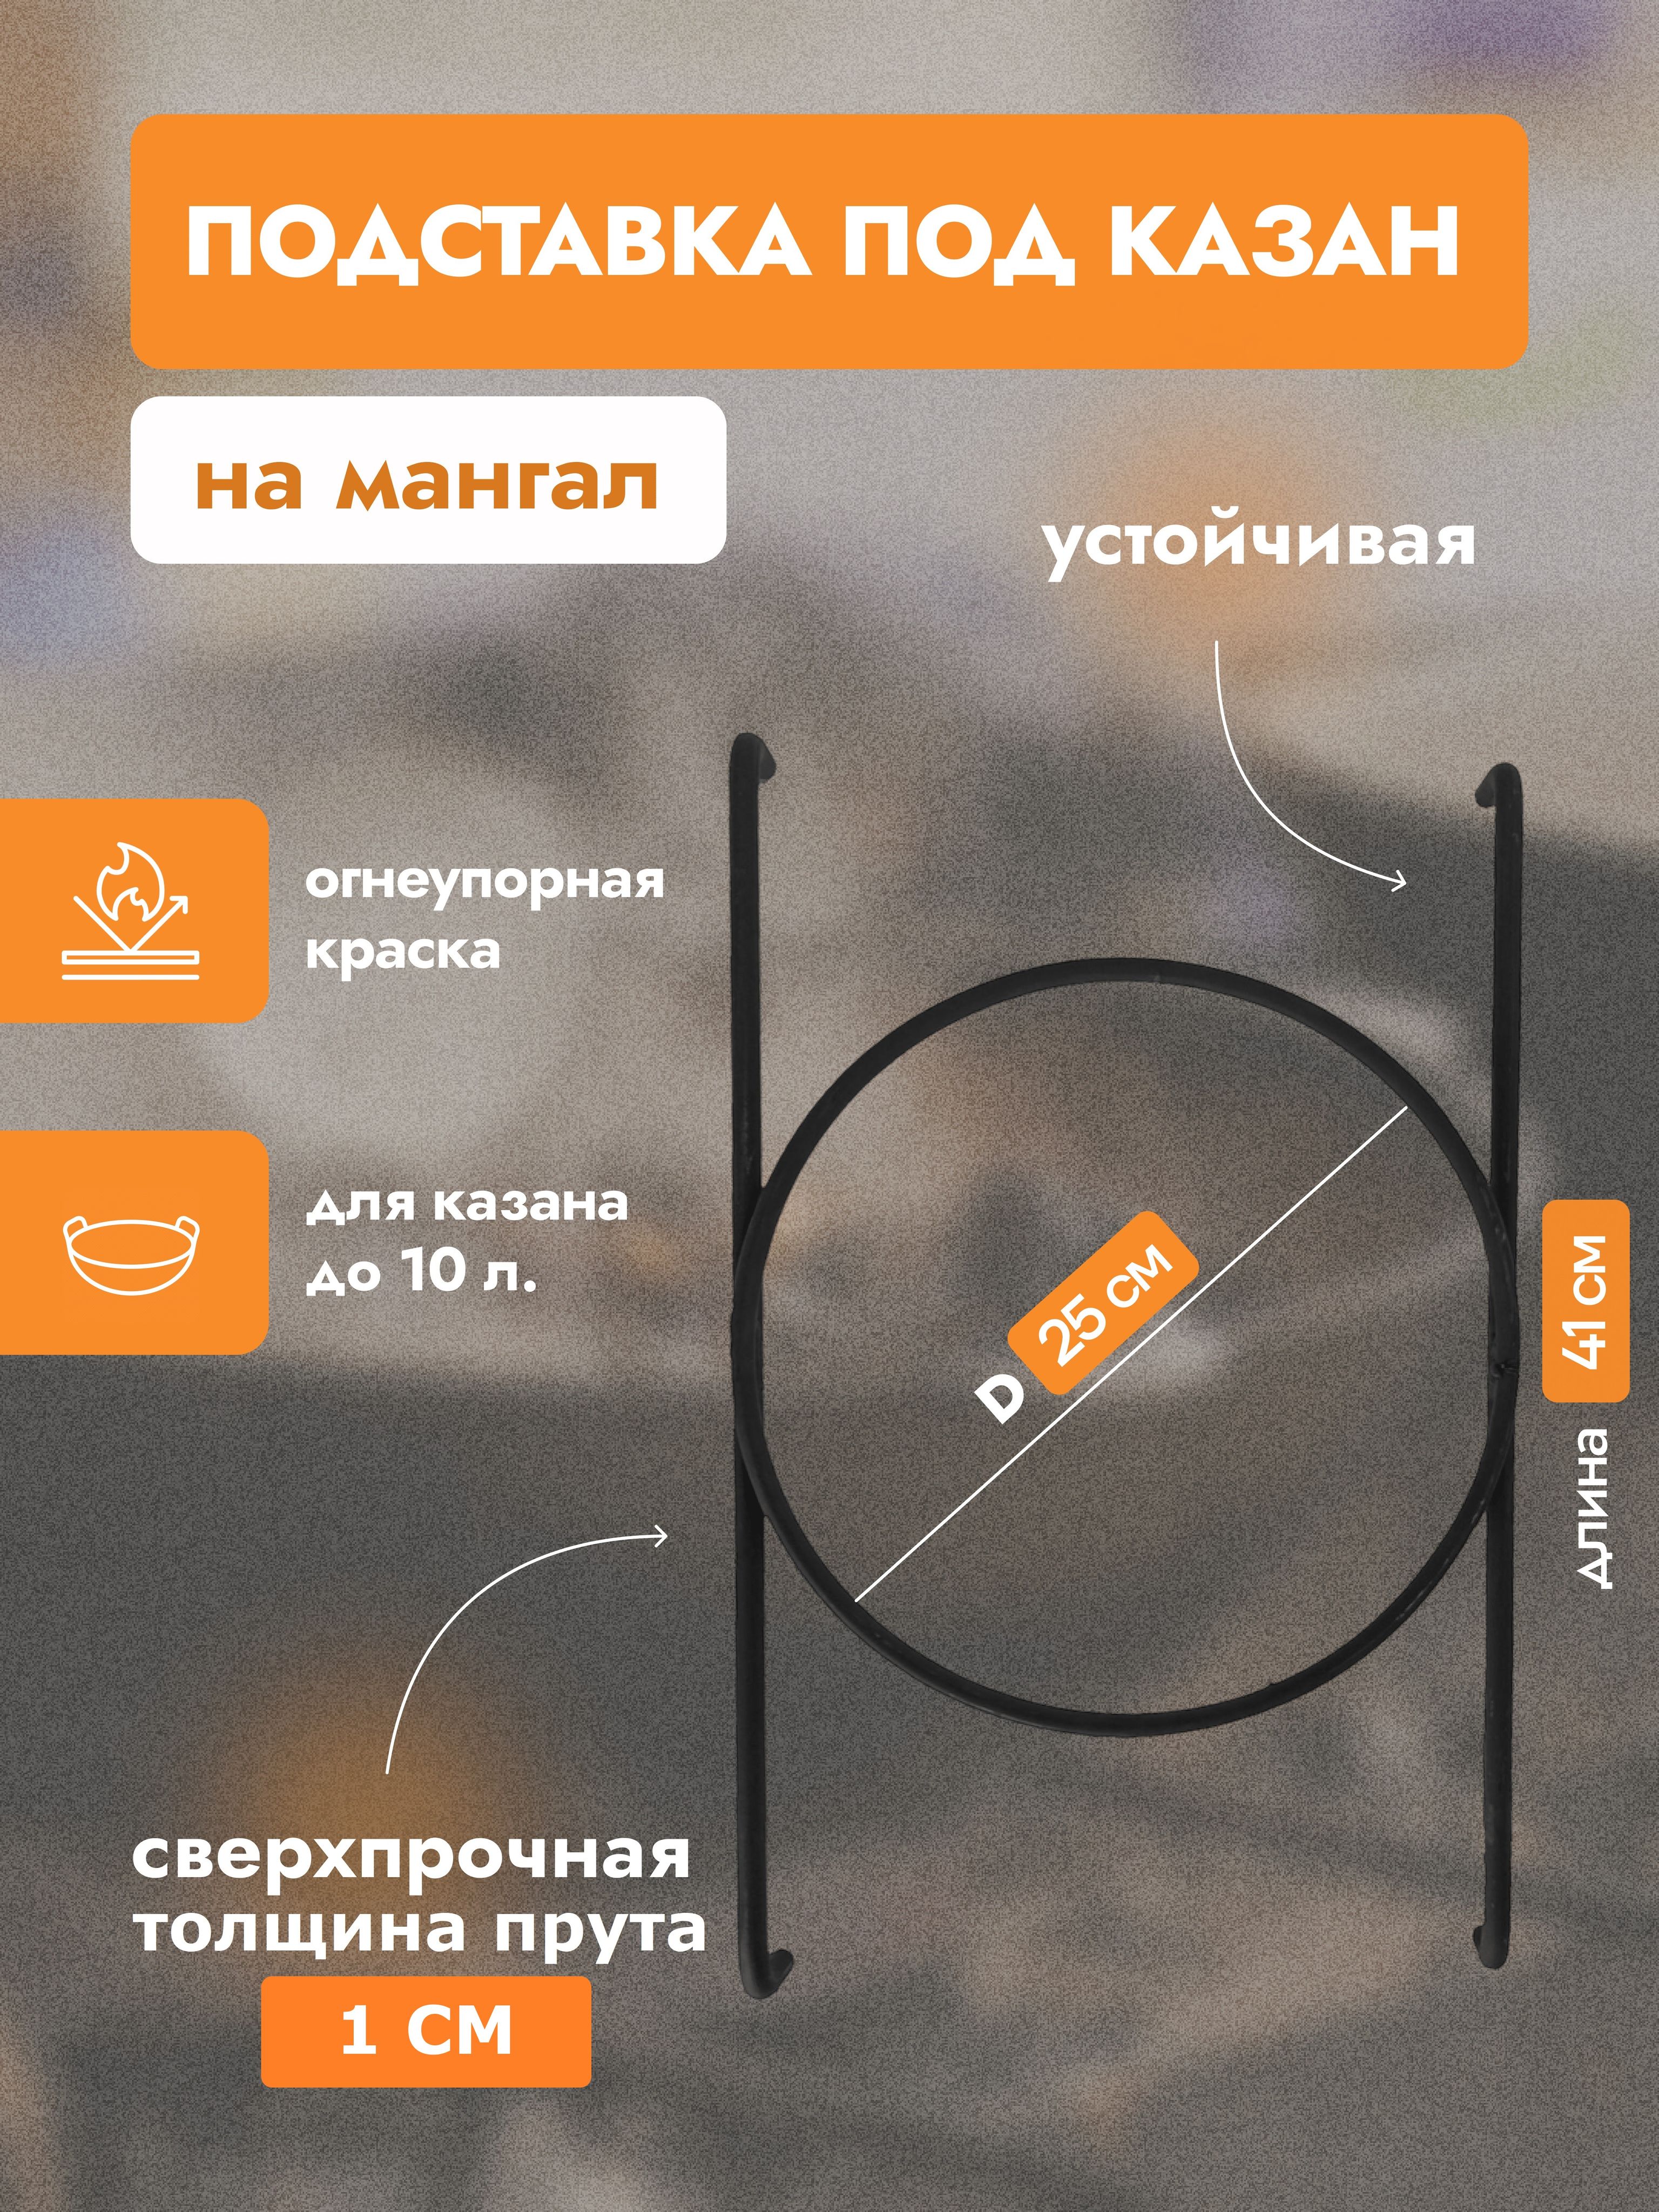 OLX.ua - объявления в Украине - подставка для казана